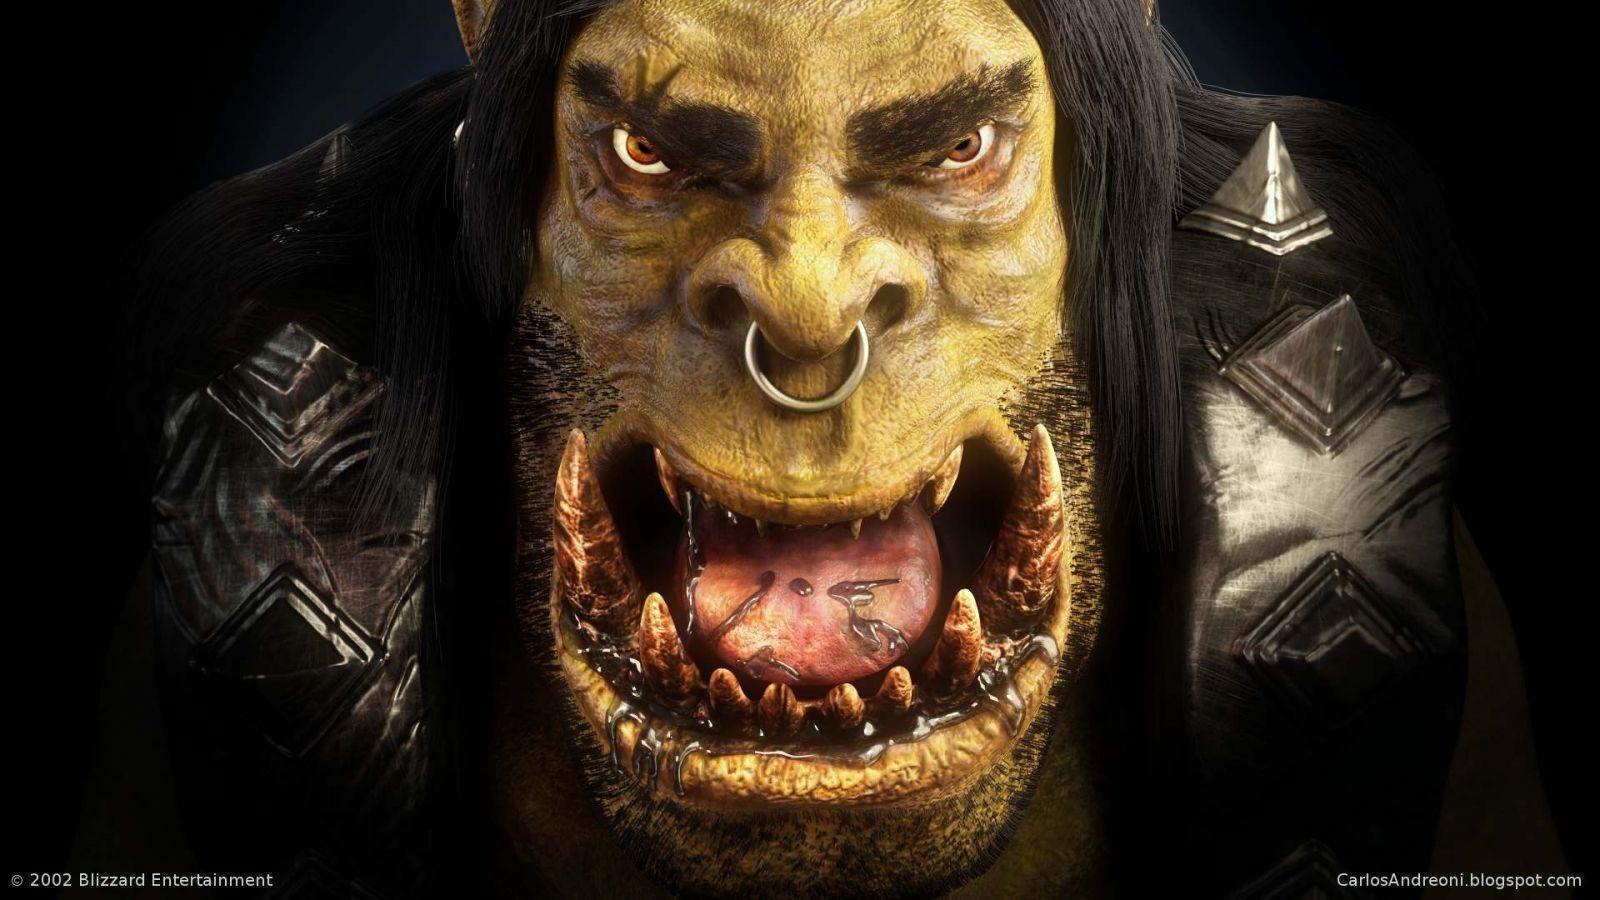 Warcraft II Tides Of Darkness Hd Full Wallpapers, Warcraft II Tides Of Darkness, Game